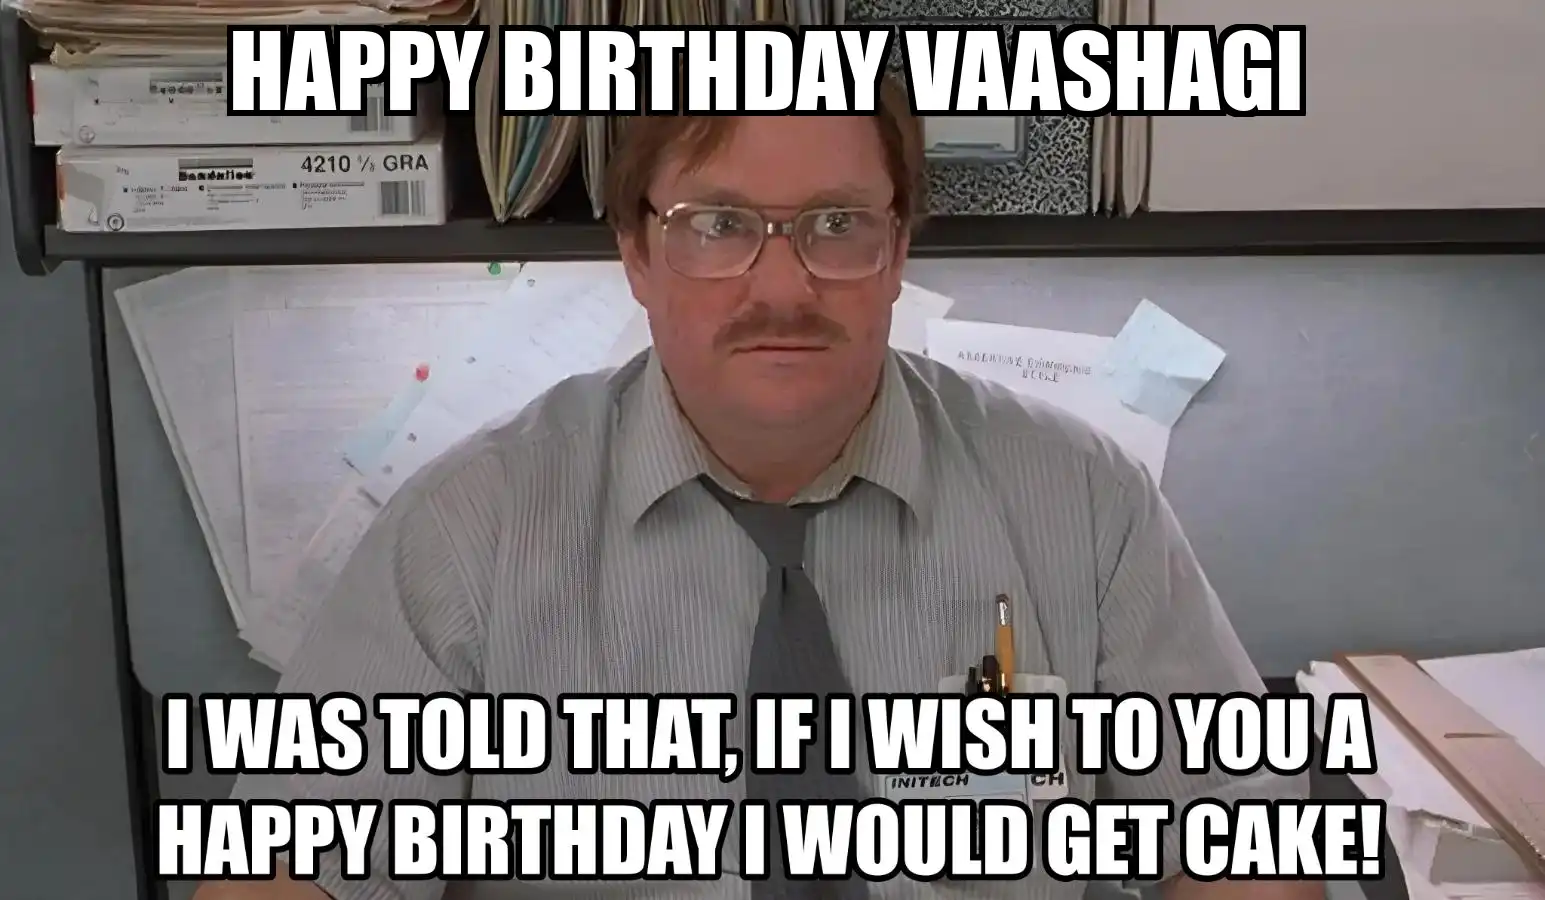 Happy Birthday Vaashagi I Would Get A Cake Meme